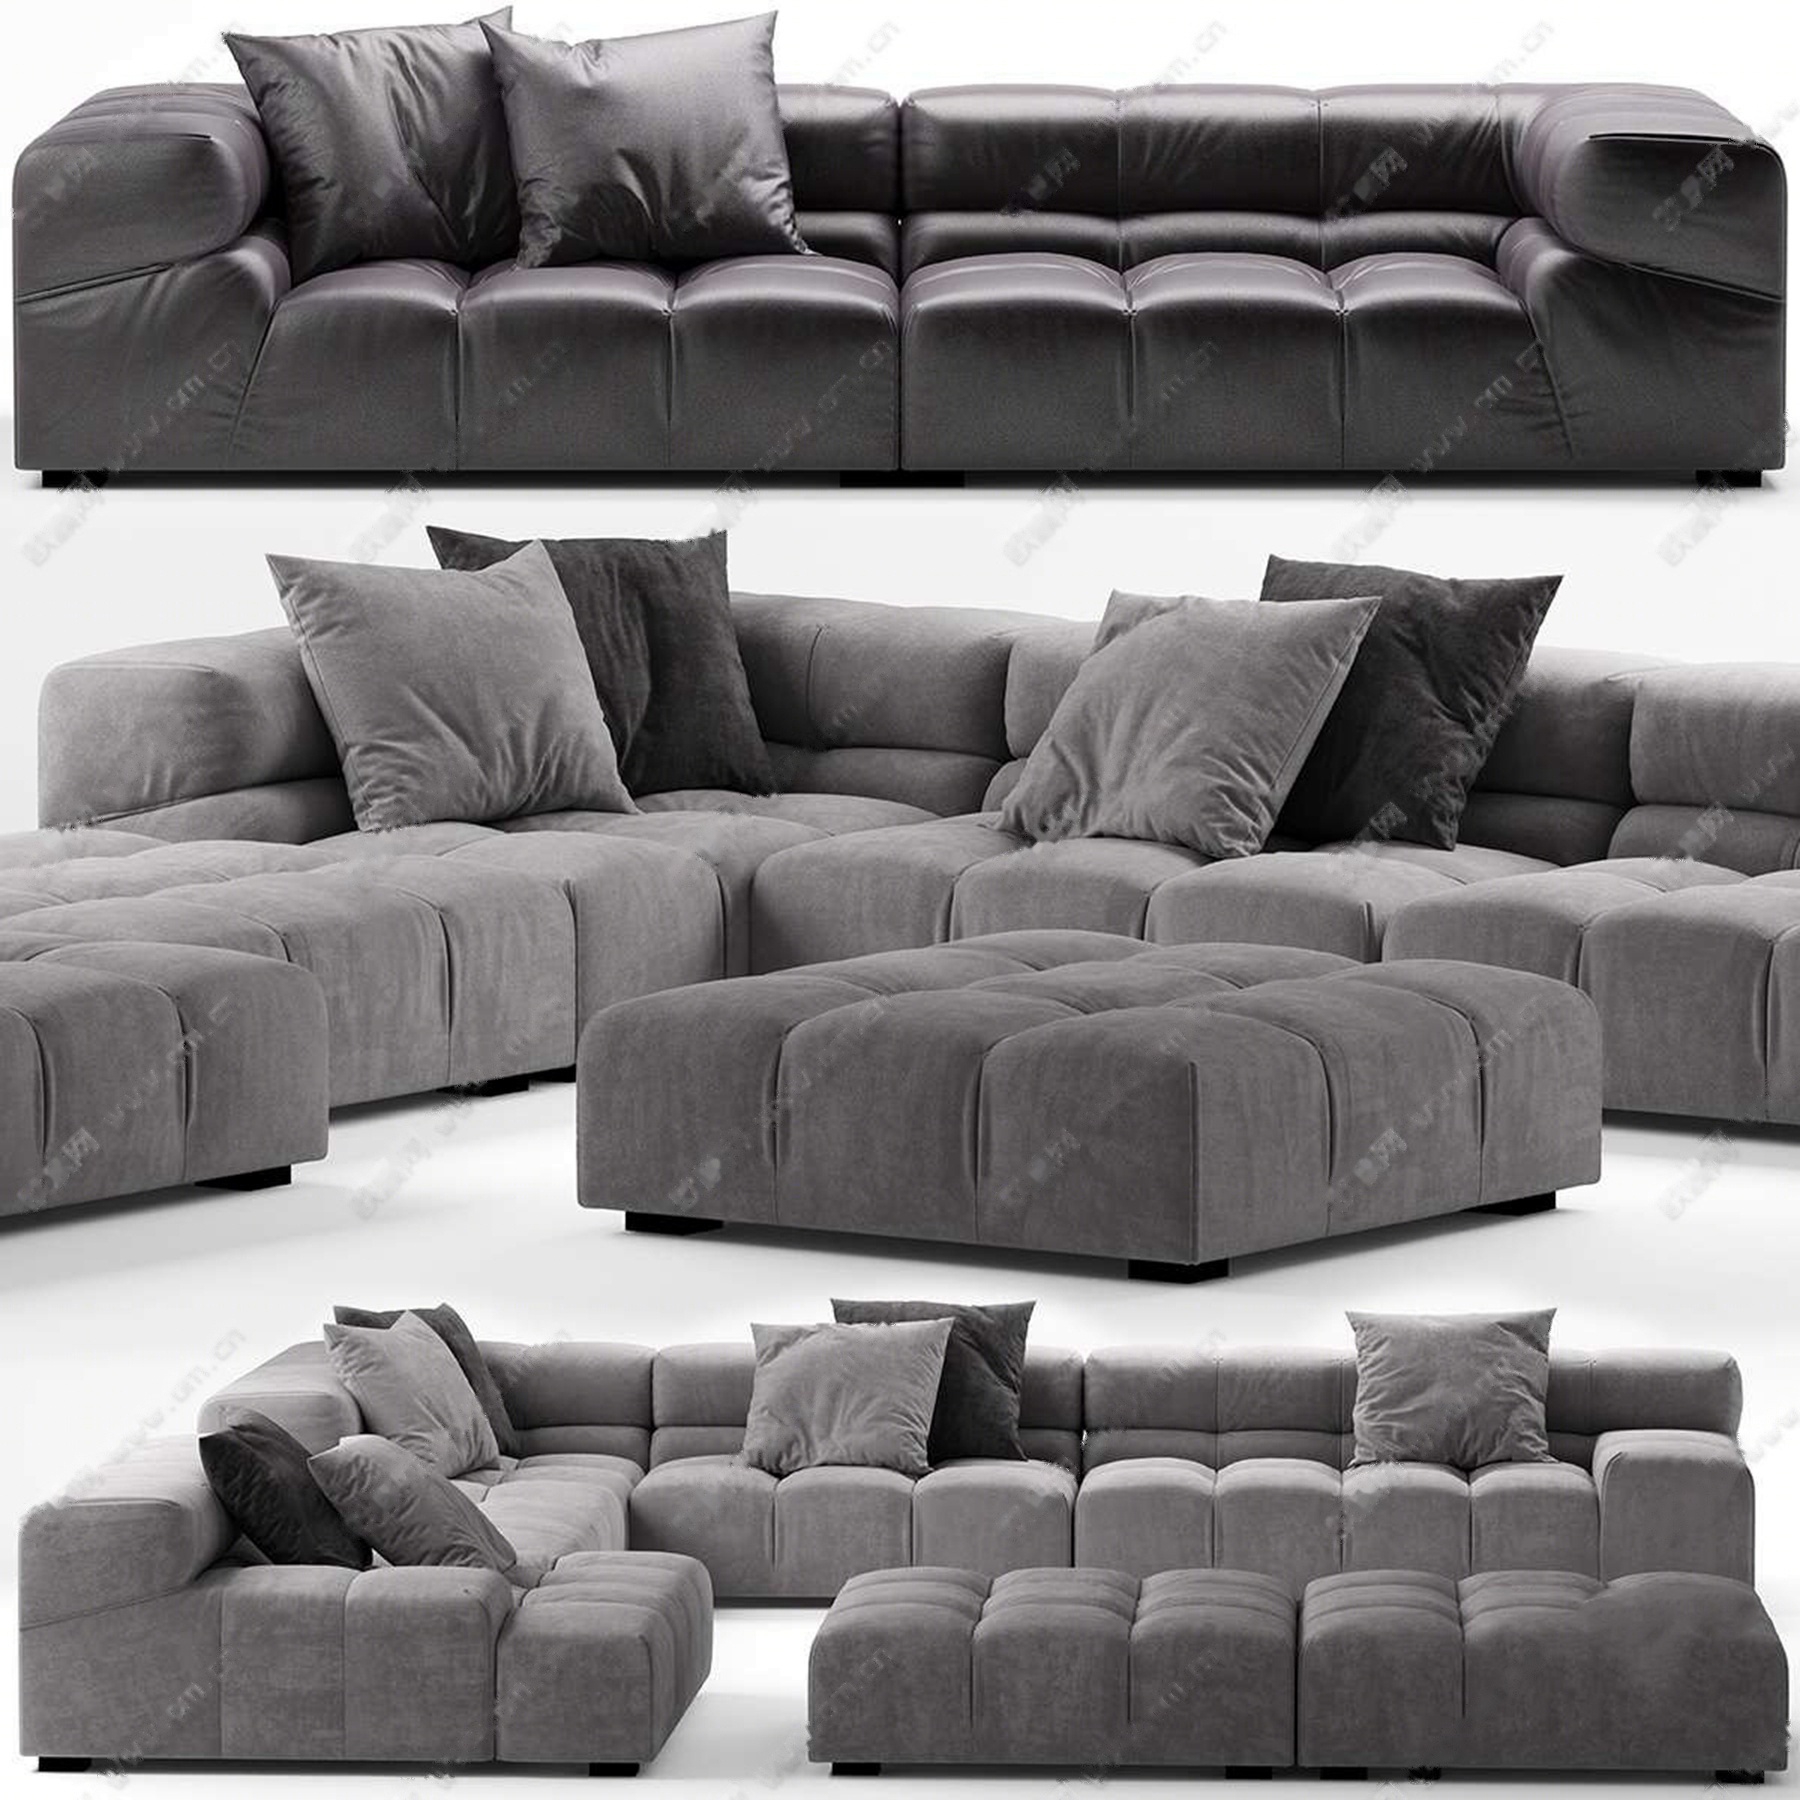 现代皮革布艺转角沙发沙发凳组合3d模型下载【id:920638919】